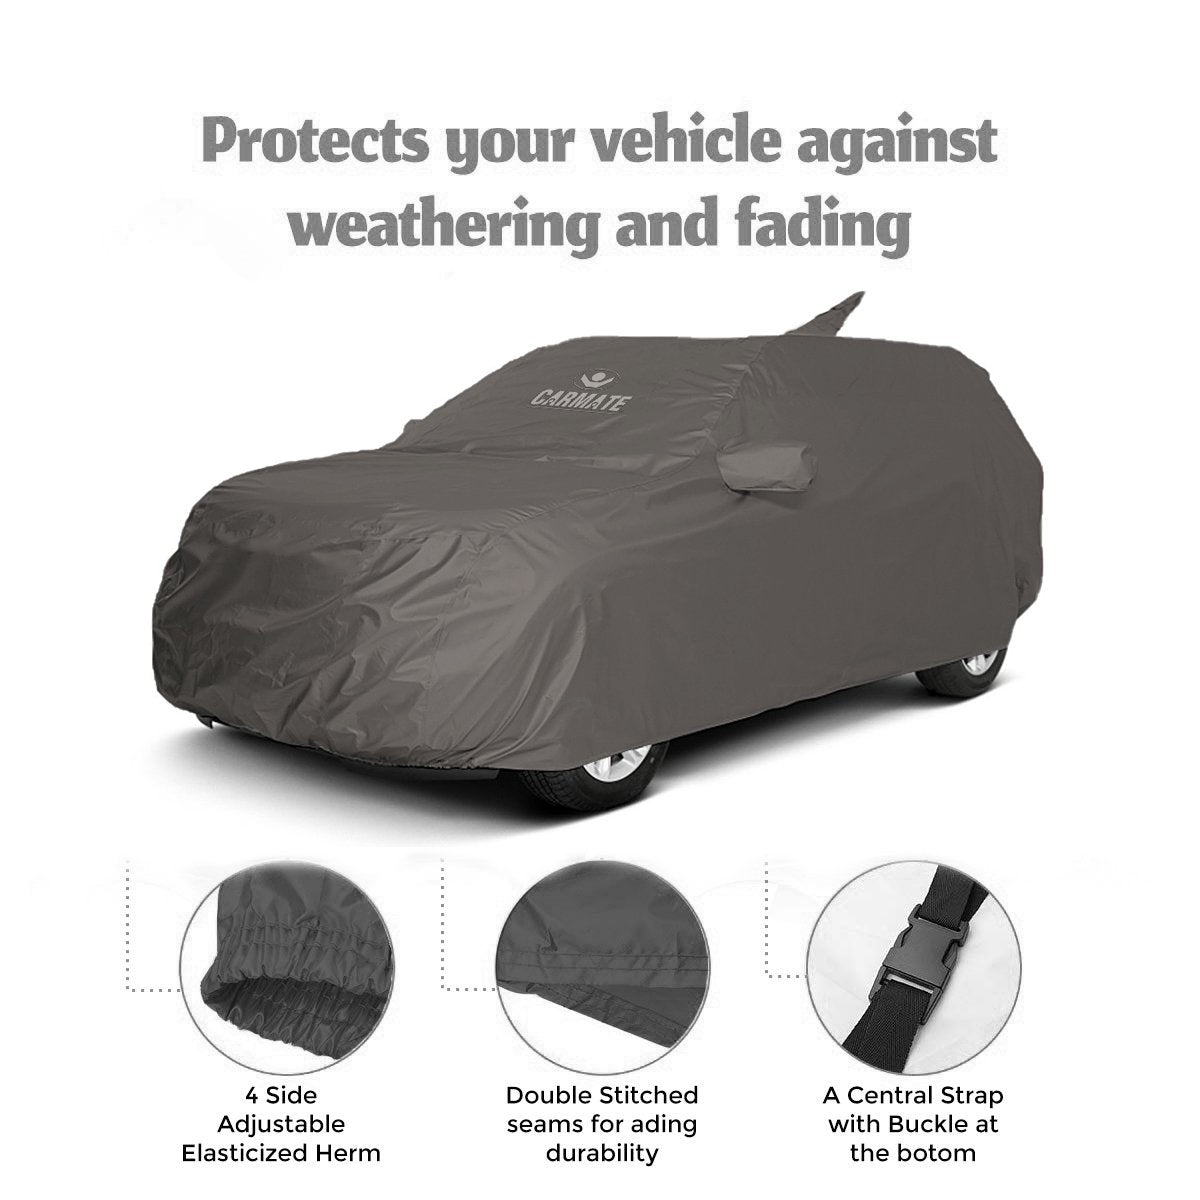 Carmate Car Body Cover 100% Waterproof Pride (Grey) for Maruti - Versa - CARMATE®